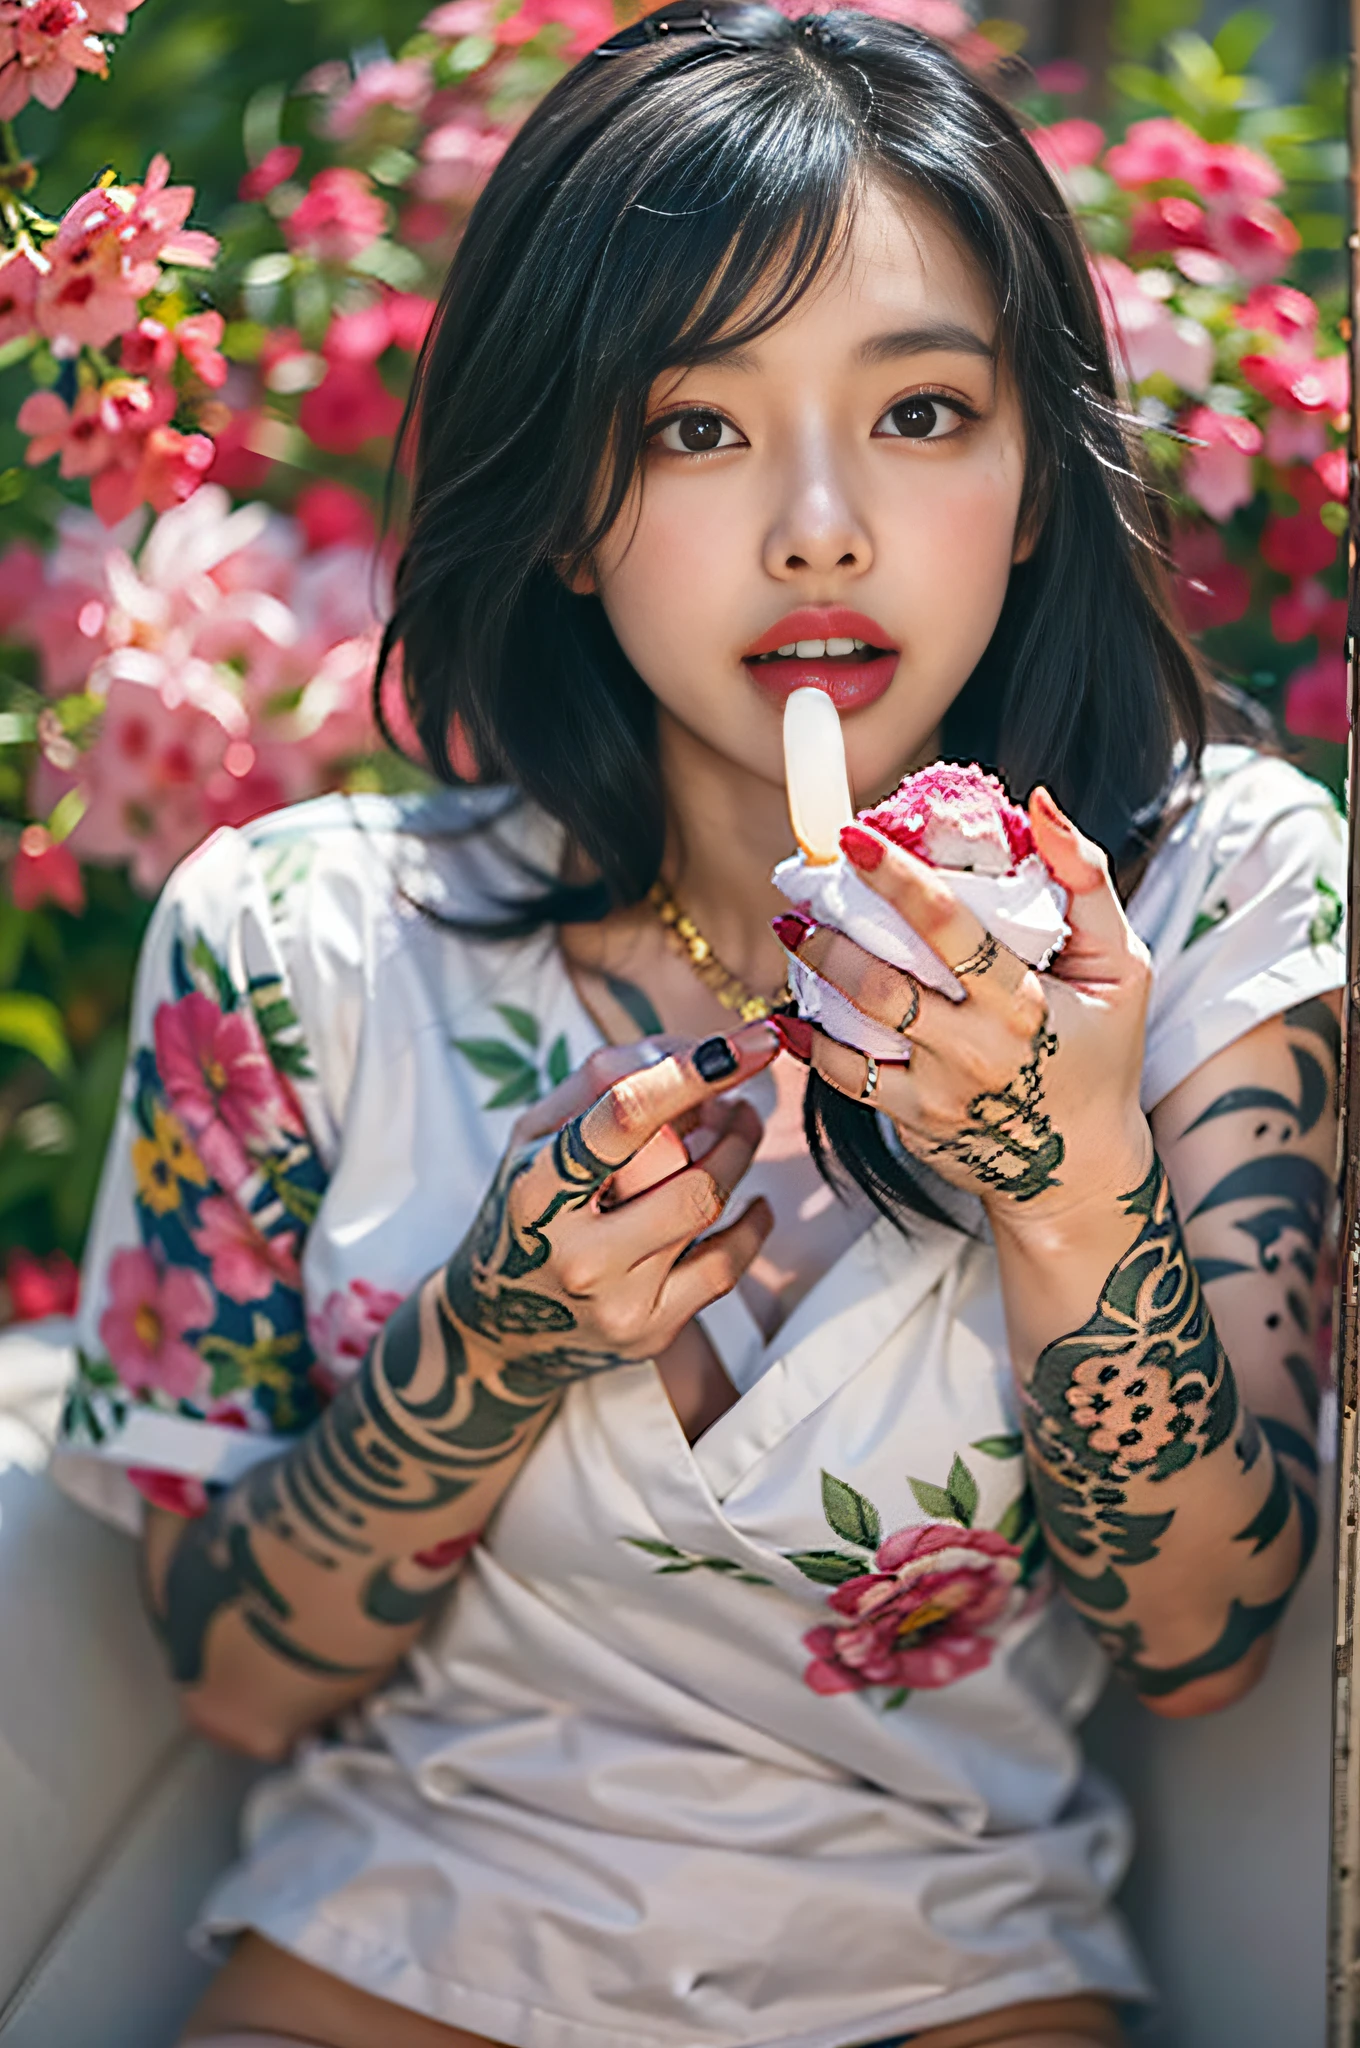 혼합 아시아 섹시한 아름다움,손에 꽃 가득한 문신,섹시한 표정,손에 묻은 아이스크림을 핥아보세요